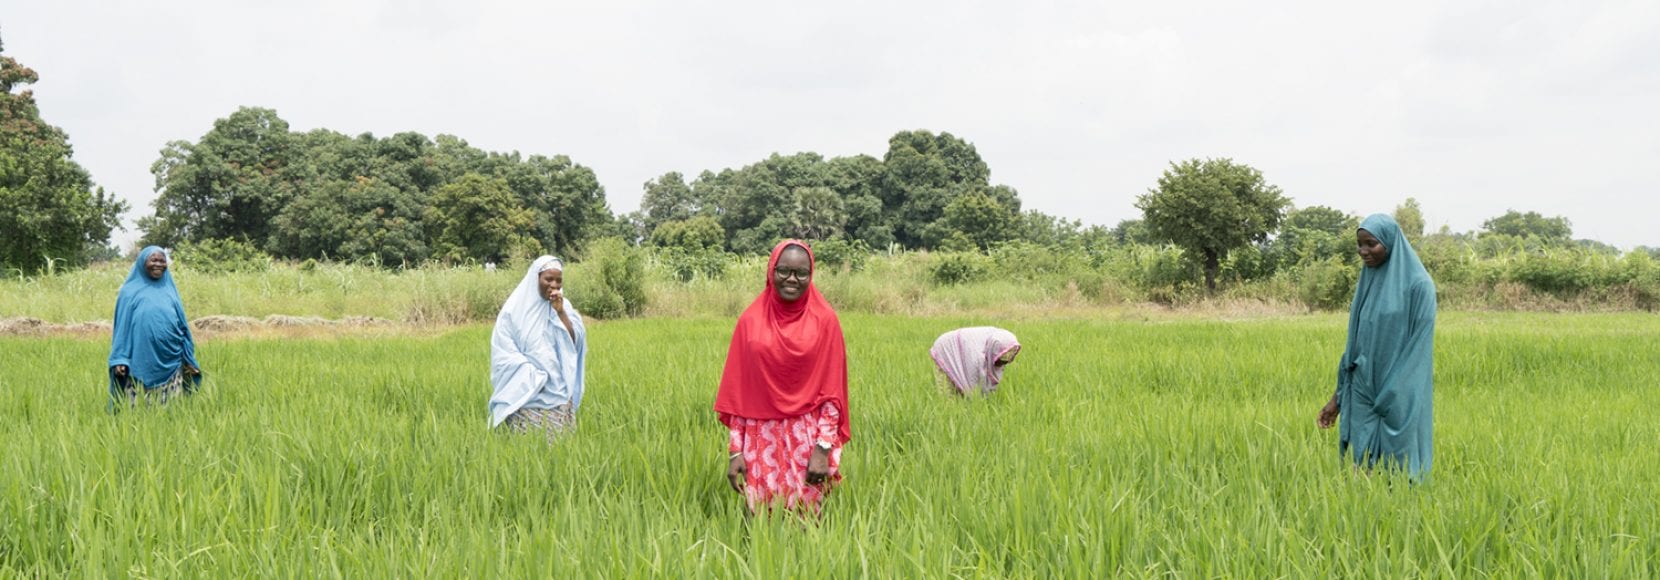 Group of women in a field in Nigeria